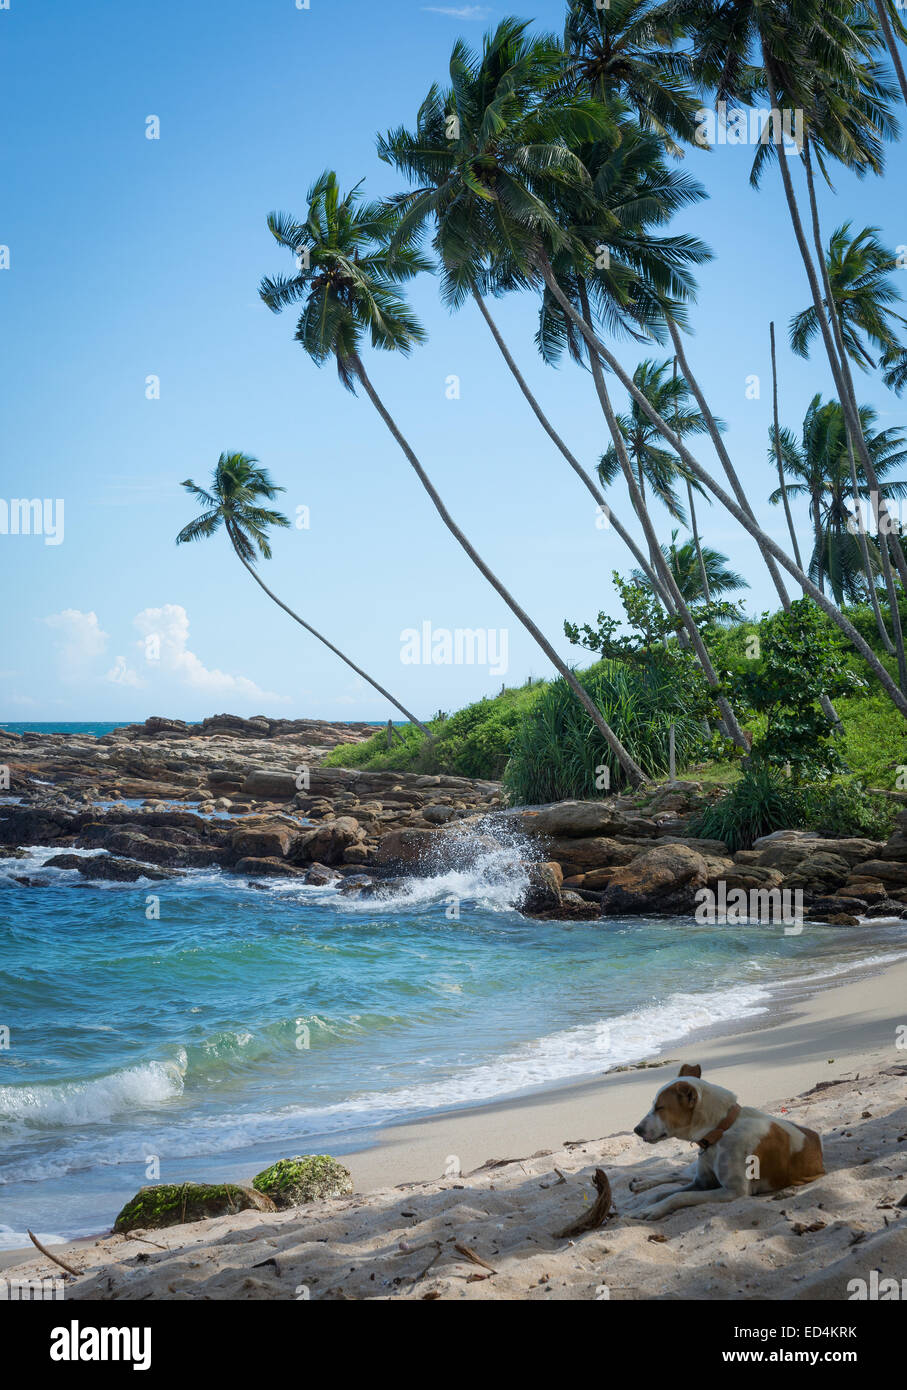 Cane in appoggio sulla tropicale sulla spiaggia rocciosa con palme di cocco, spiaggia di sabbia e l'oceano. Tangalle, sud della provincia, Sri Lanka, Asia Foto Stock